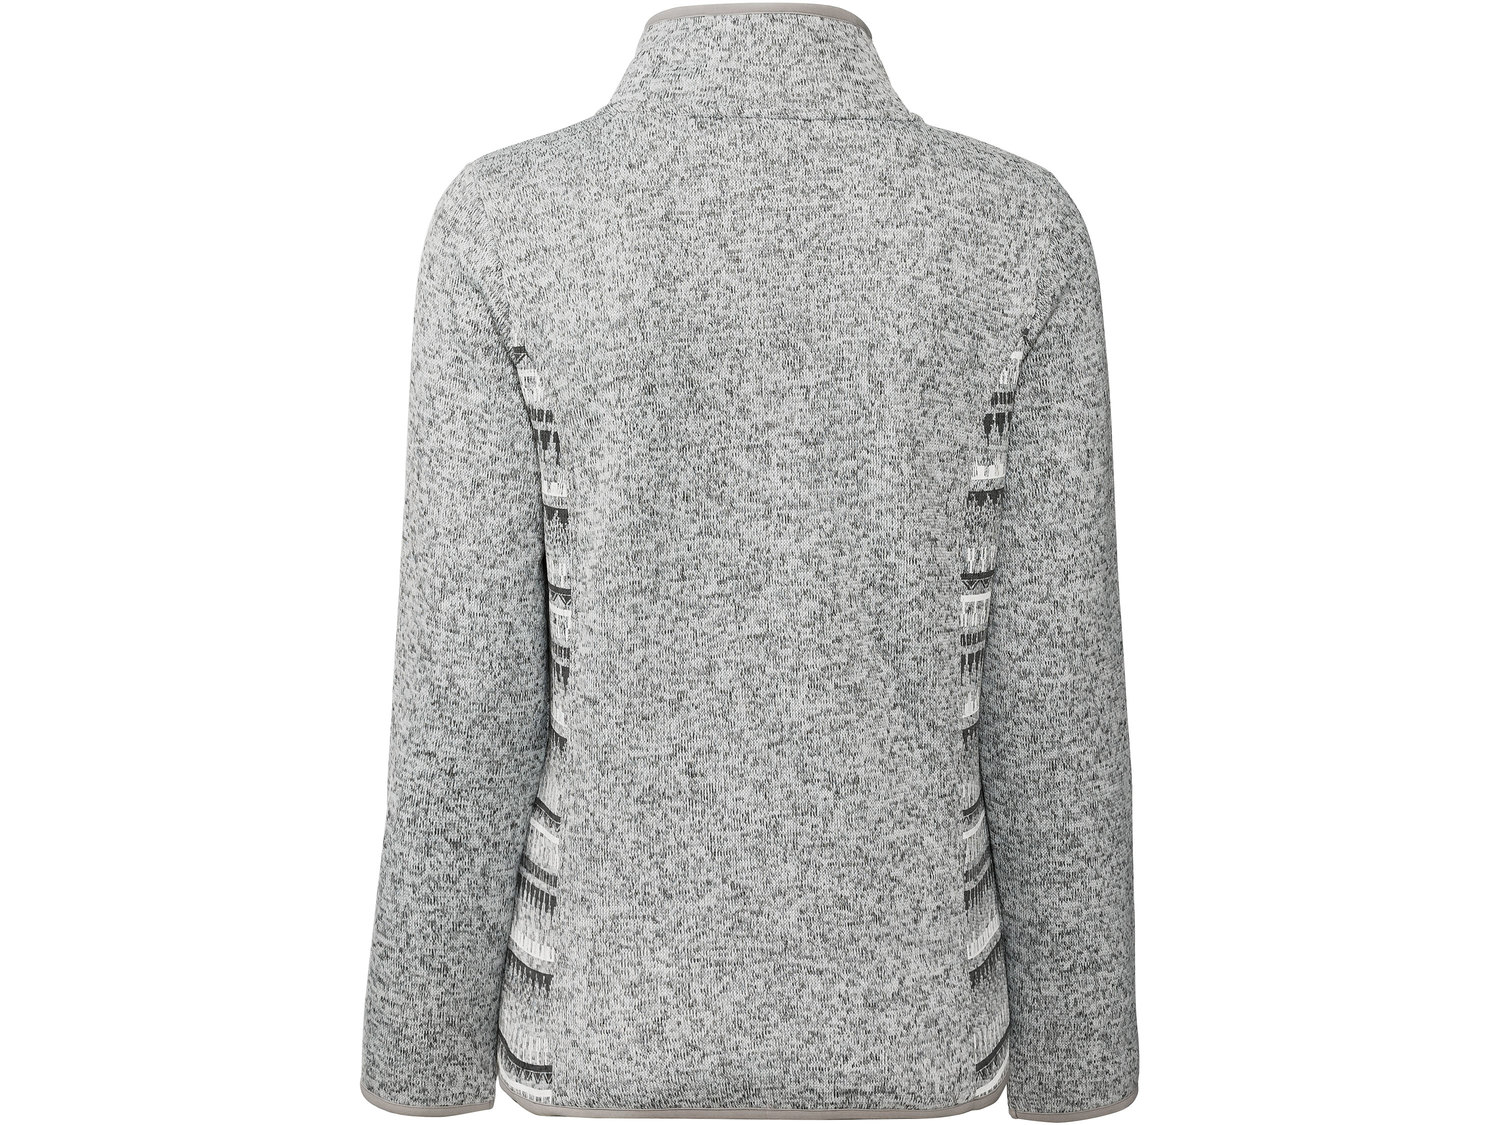 Bluza polarowa Esmara, cena 39,99 PLN 
- miękka i przyjemna w dotyku
- rozmiary: ...